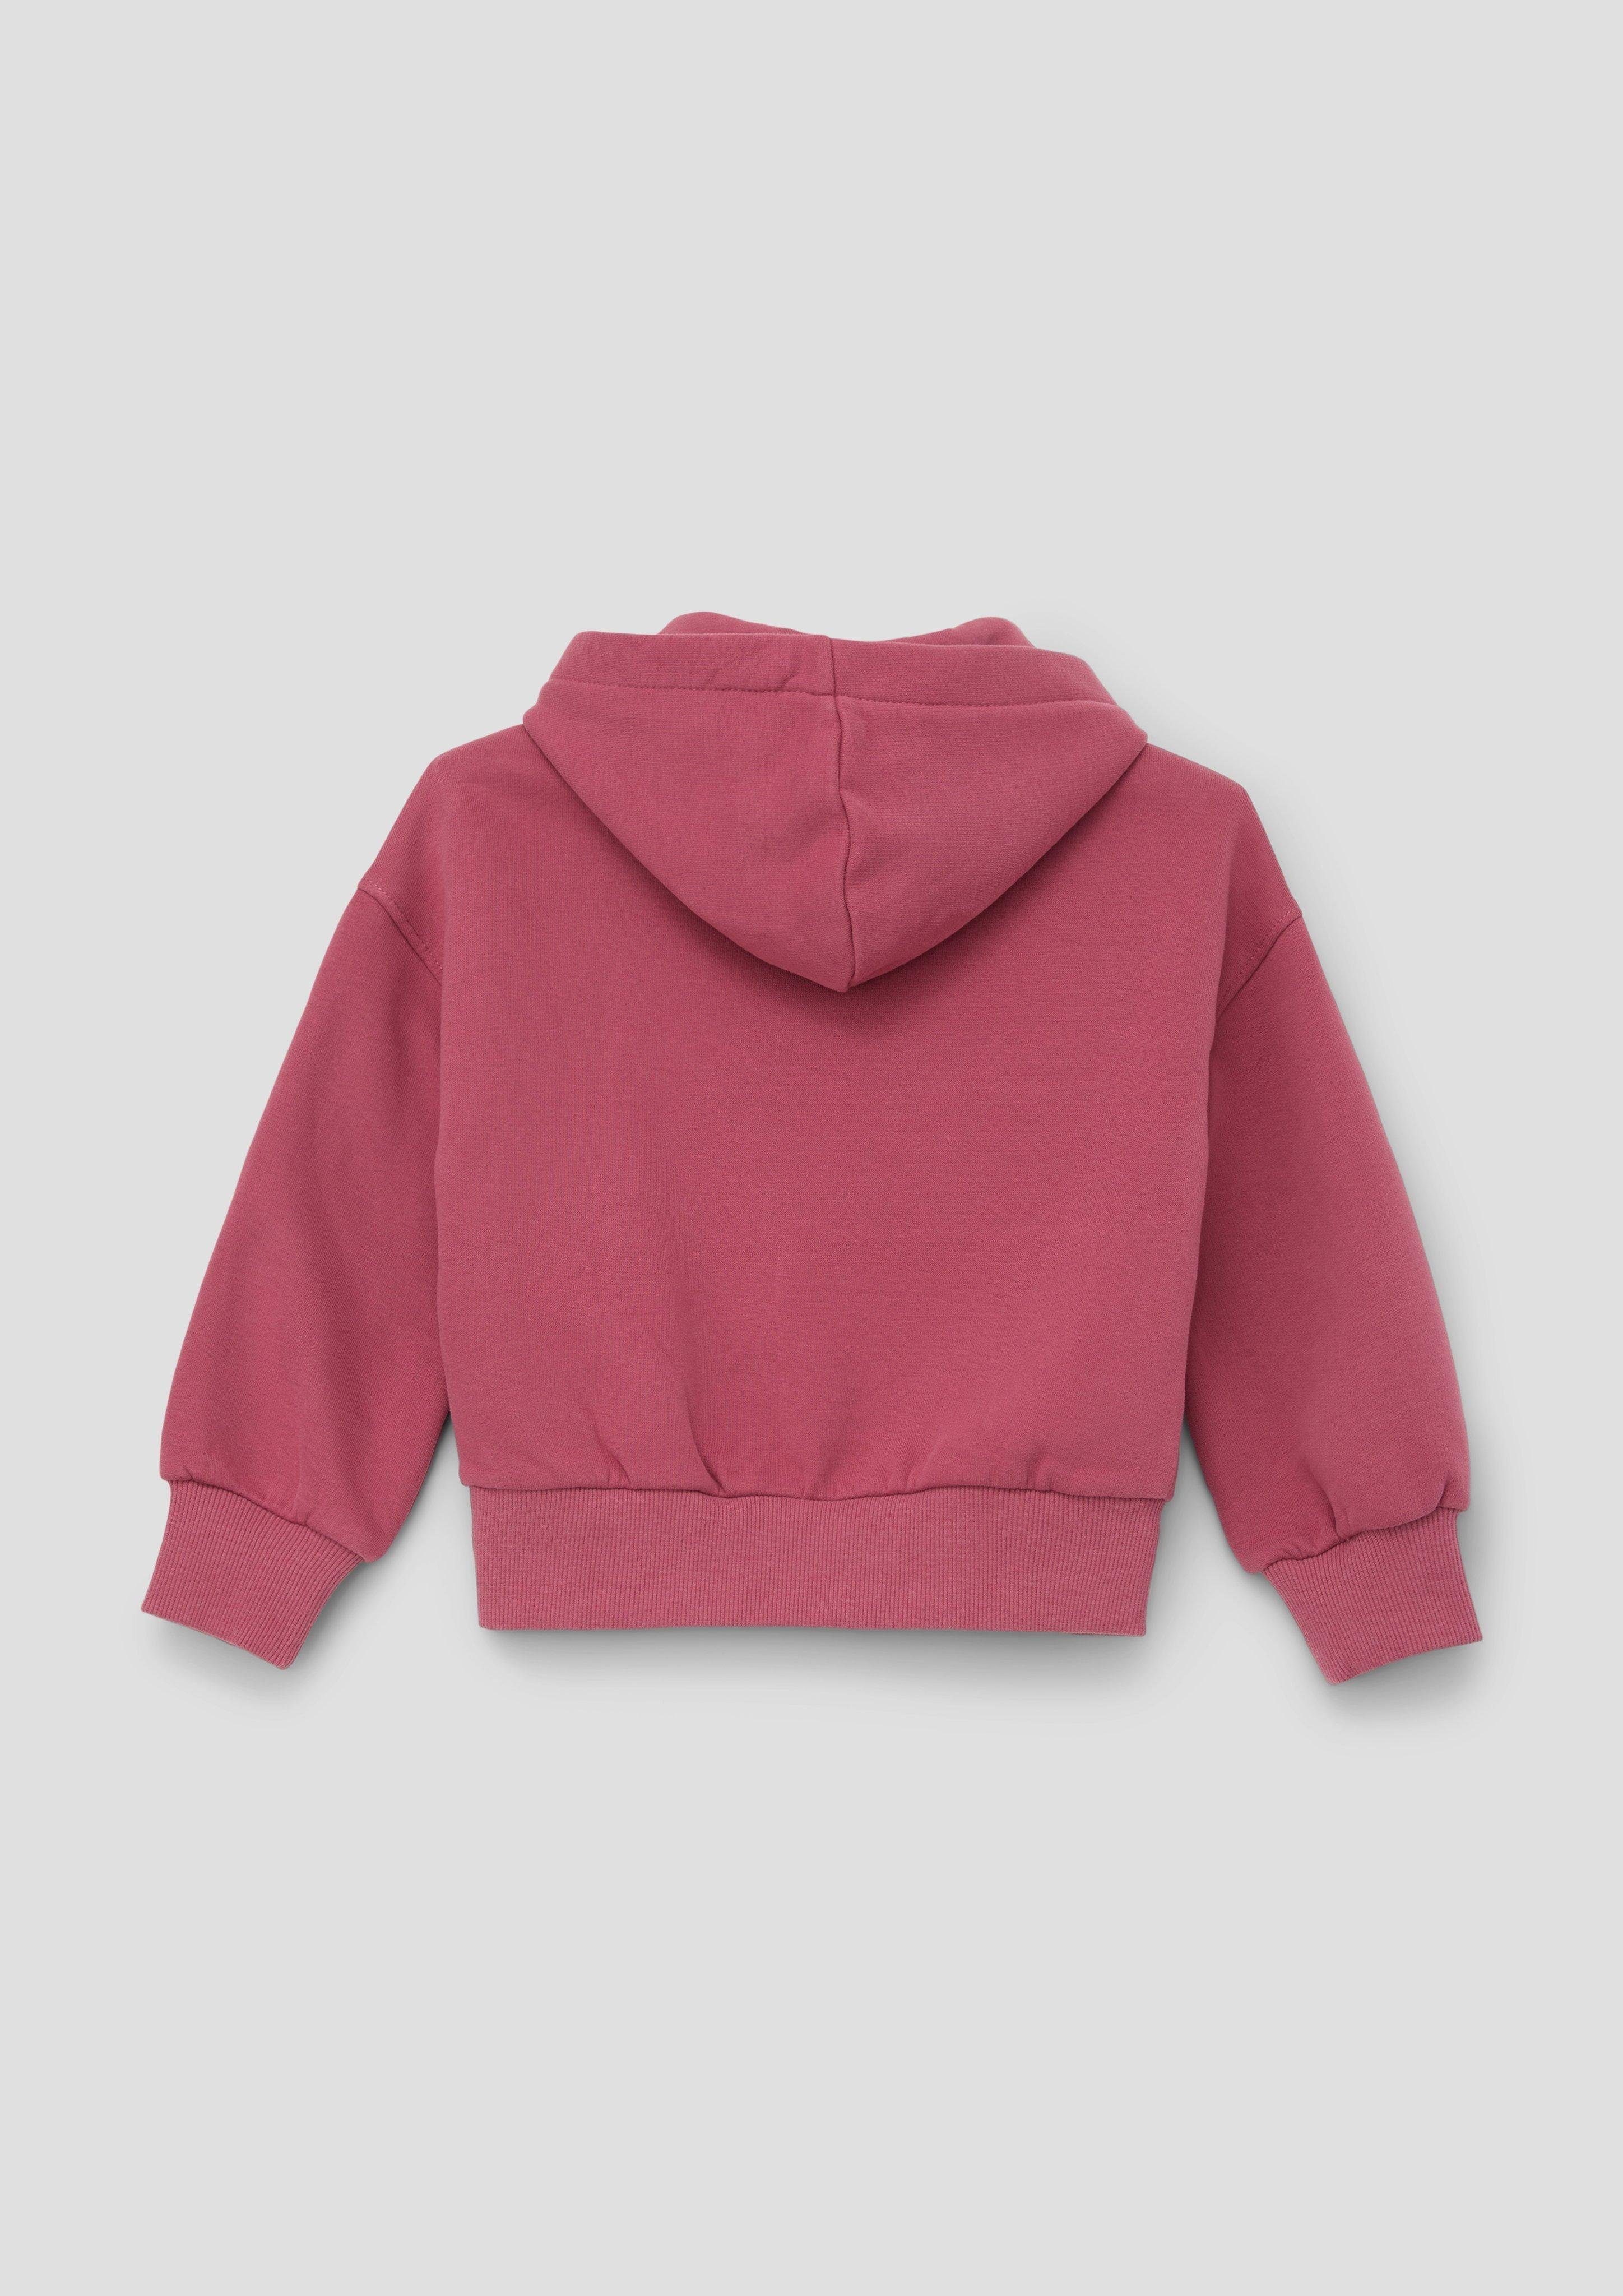 s.Oliver Sweatshirt Sweatshirt mit Pailletten Pailletten-Stern pink